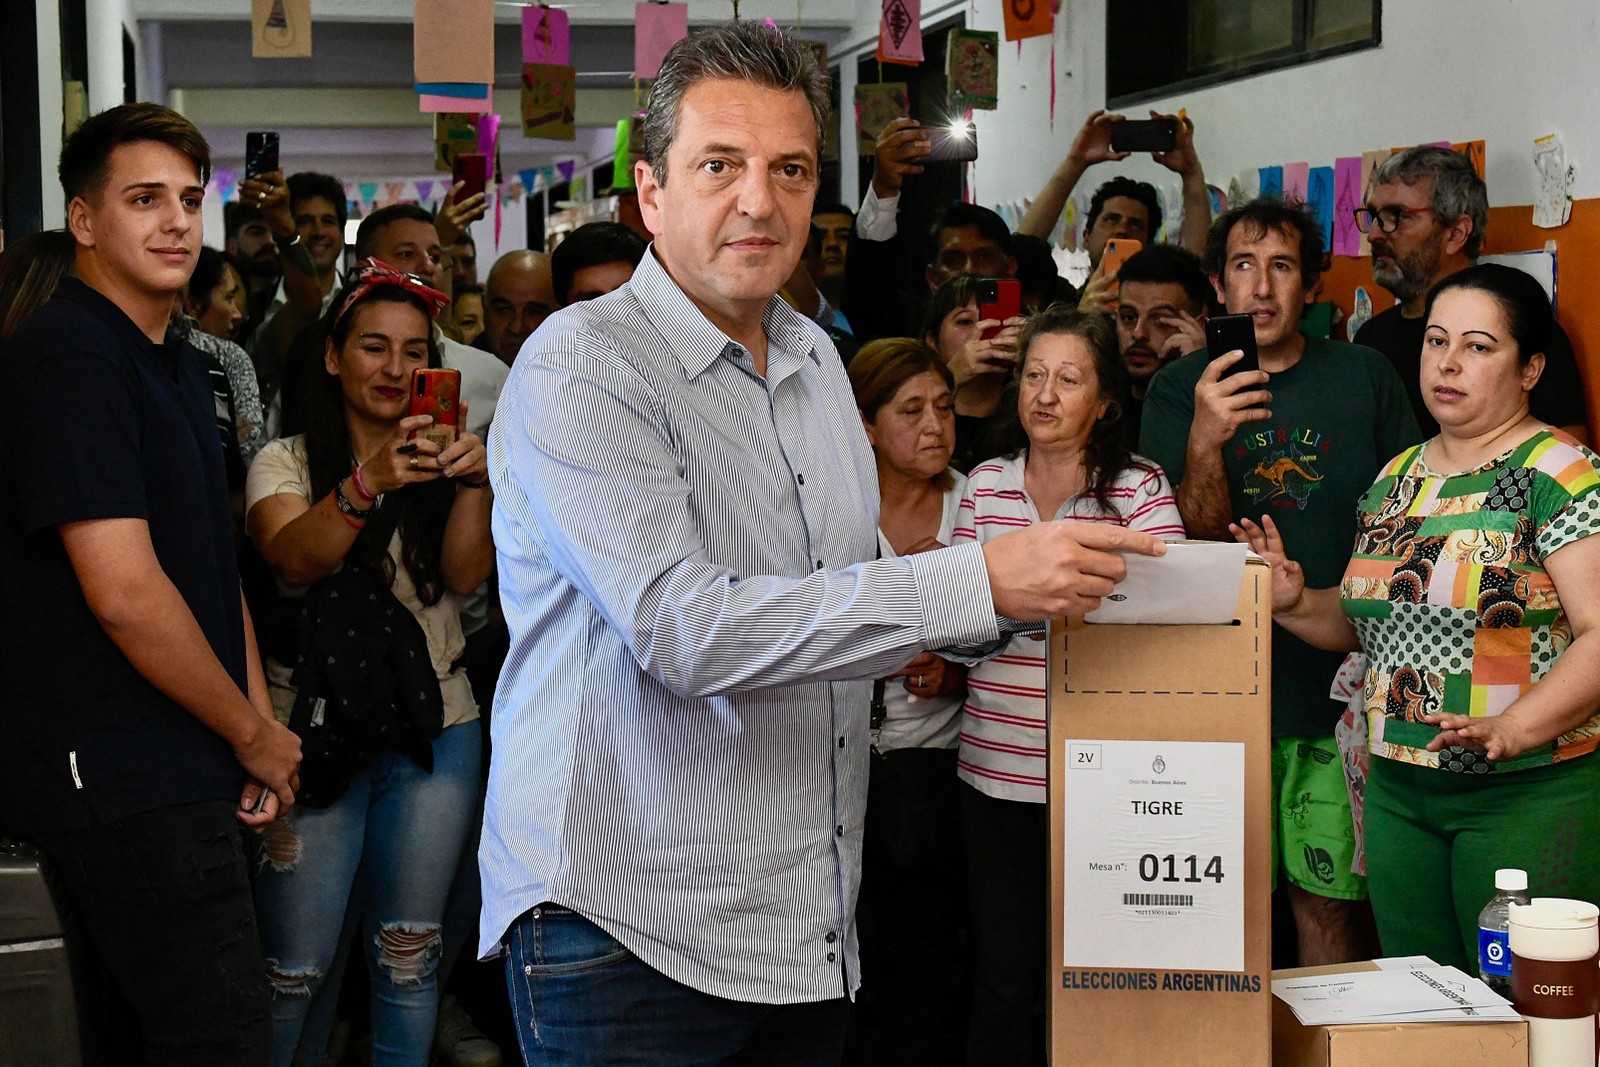 Ministro da Economia argentino e candidato presidencial, Sergio Massa vota em uma seção eleitoral em Tigre, Buenos Aires, no segundo turno das eleições — Foto: MAXIMILIANO VERNAZZA / UNION POR LA PATRIA / AFP